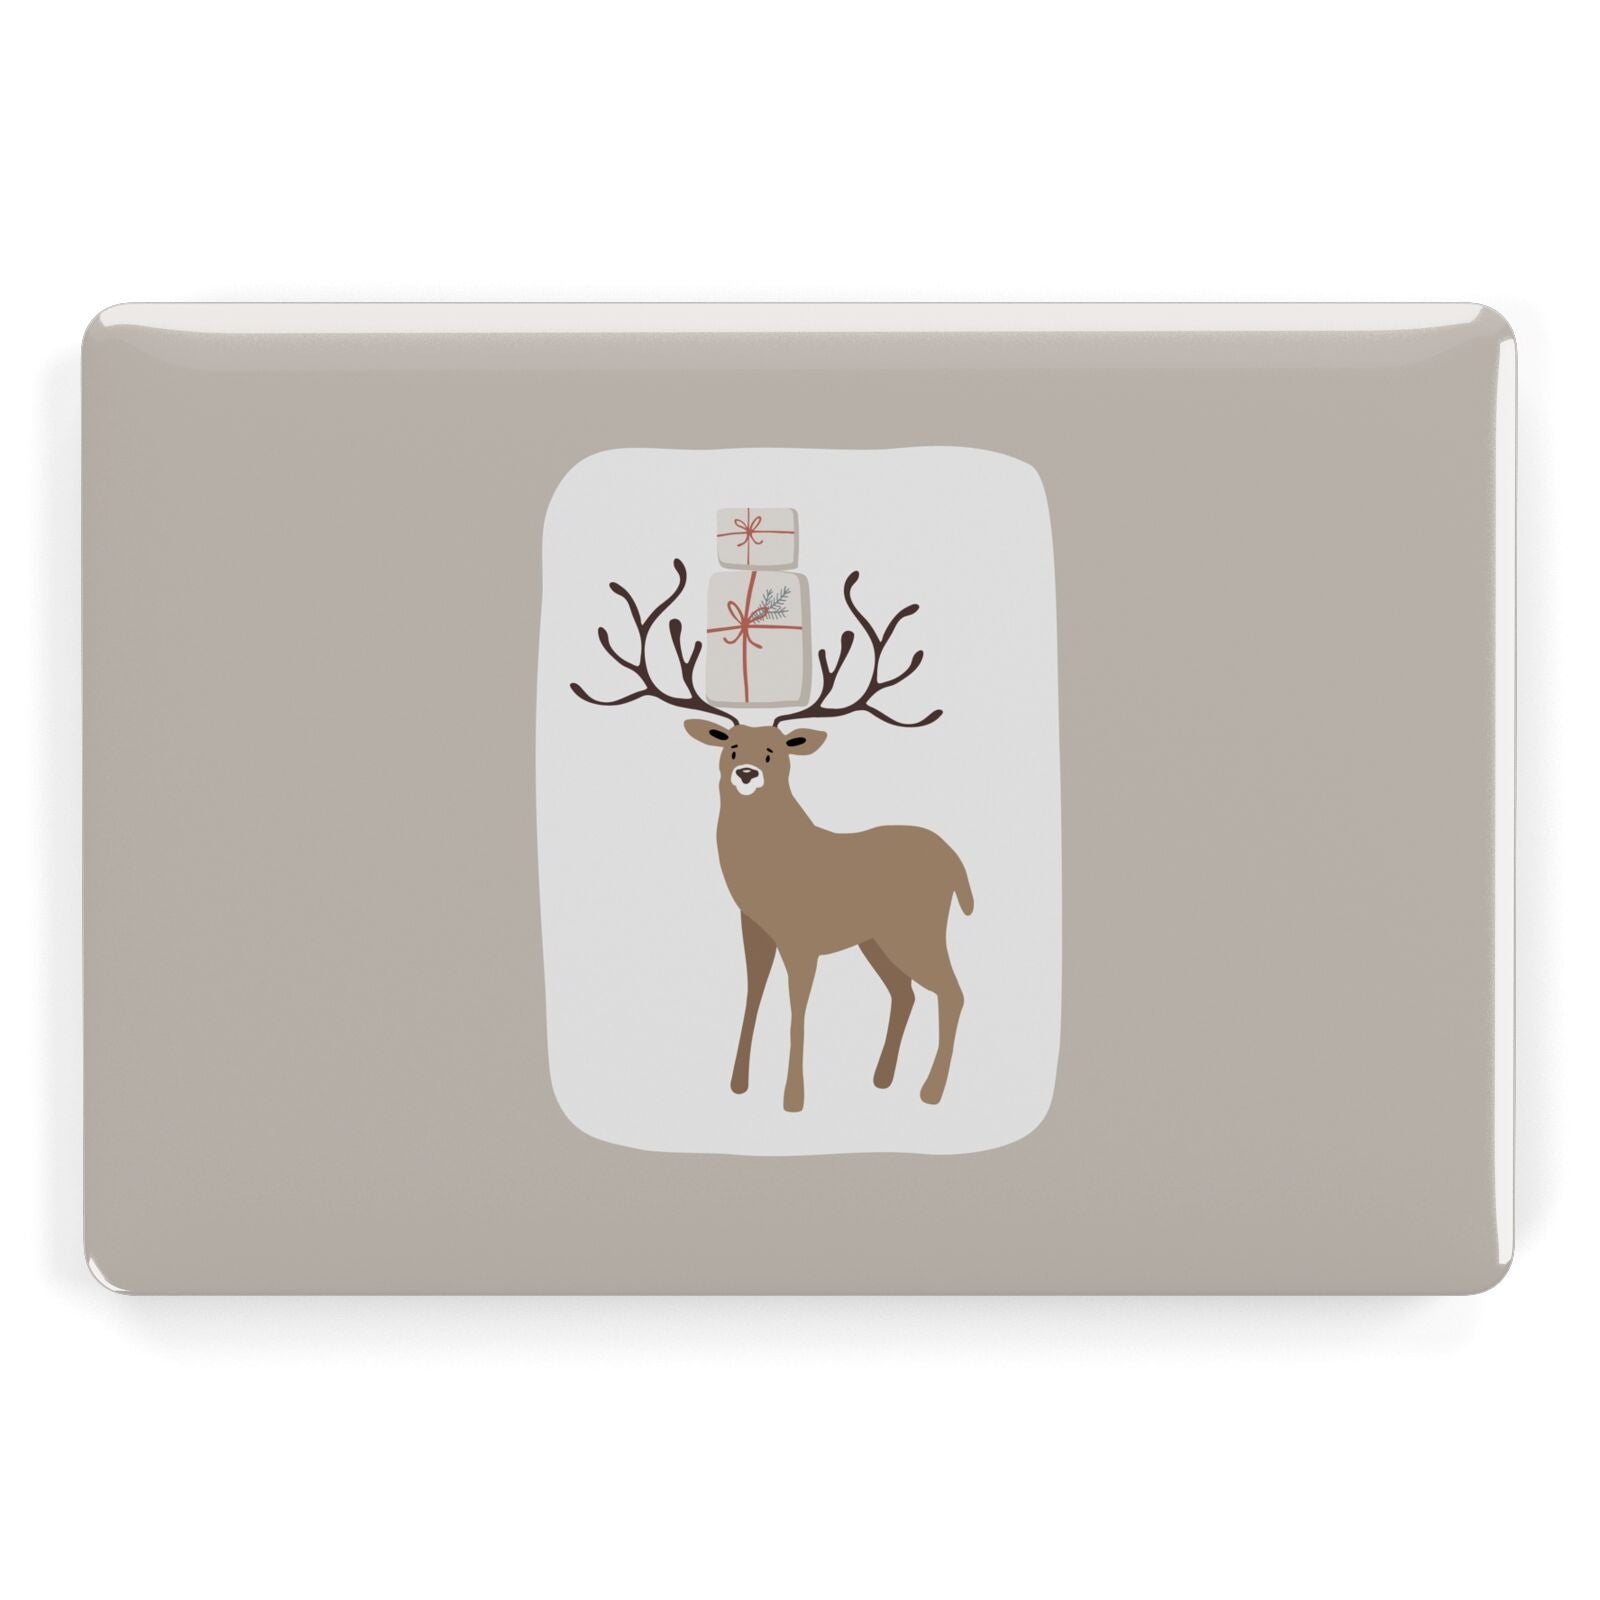 Reindeer Presents Apple MacBook Case